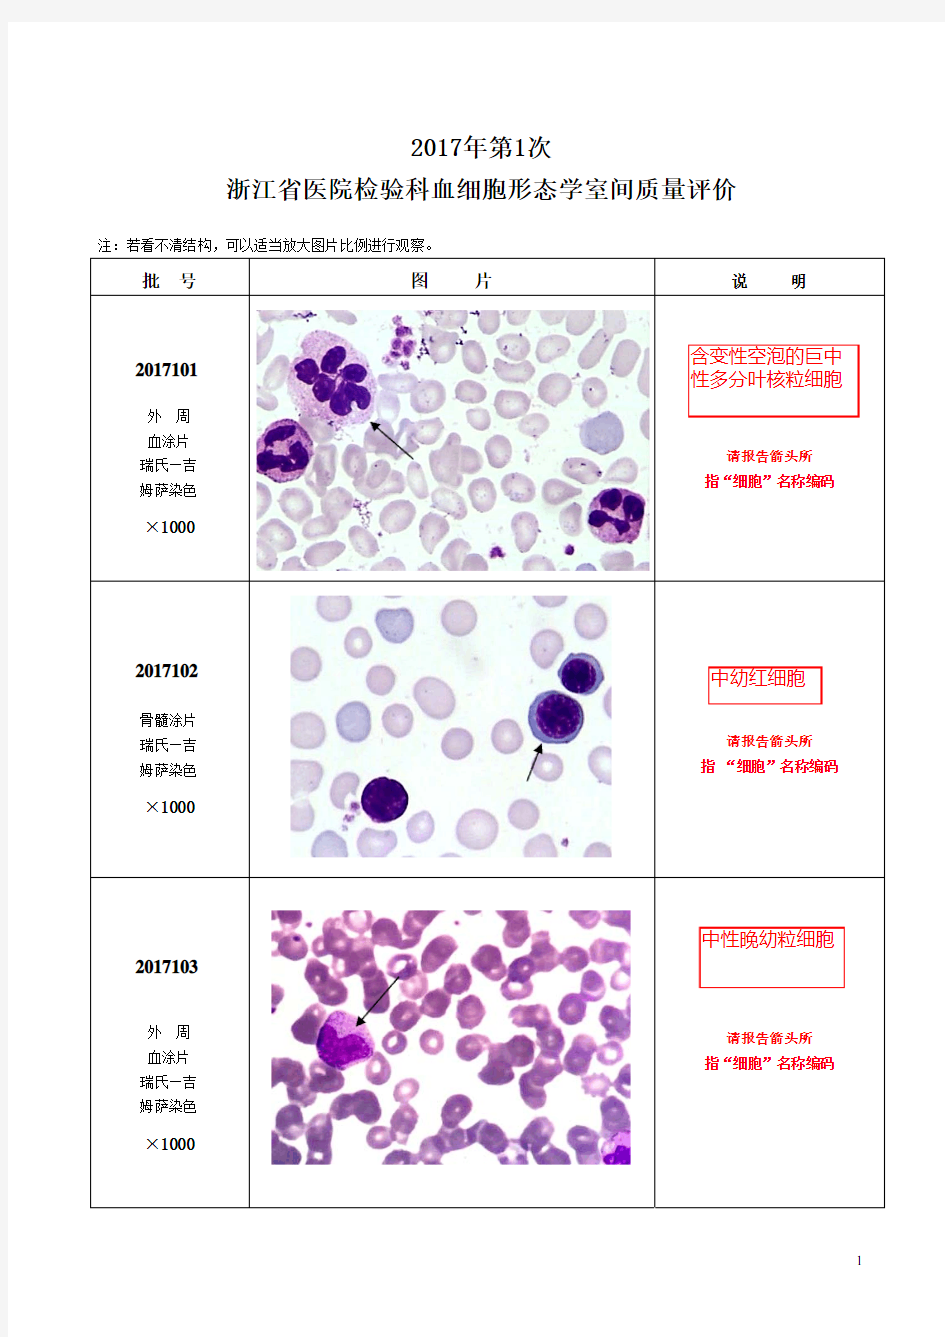 2017年第1次血细胞形态学EQA图(答案)